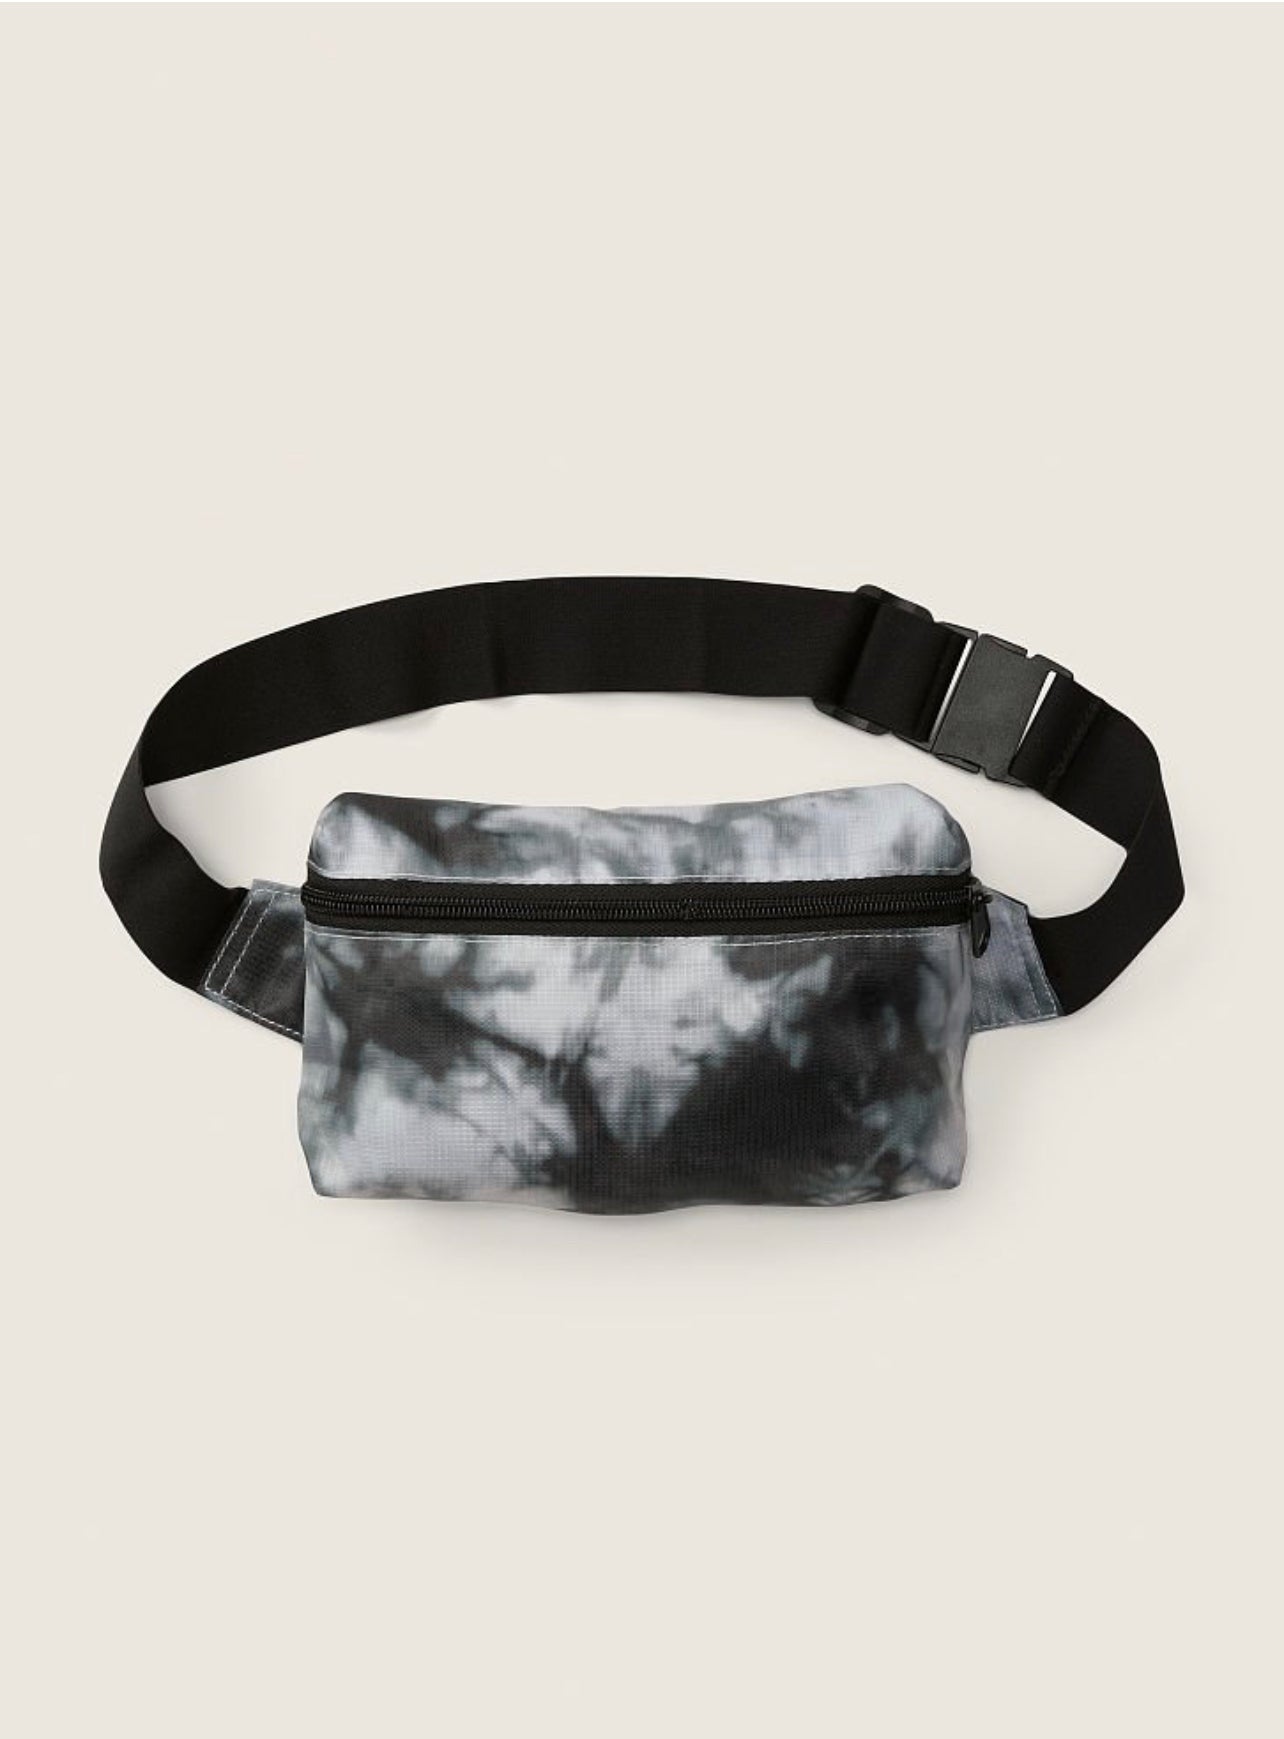 Backpack / Belt Bag